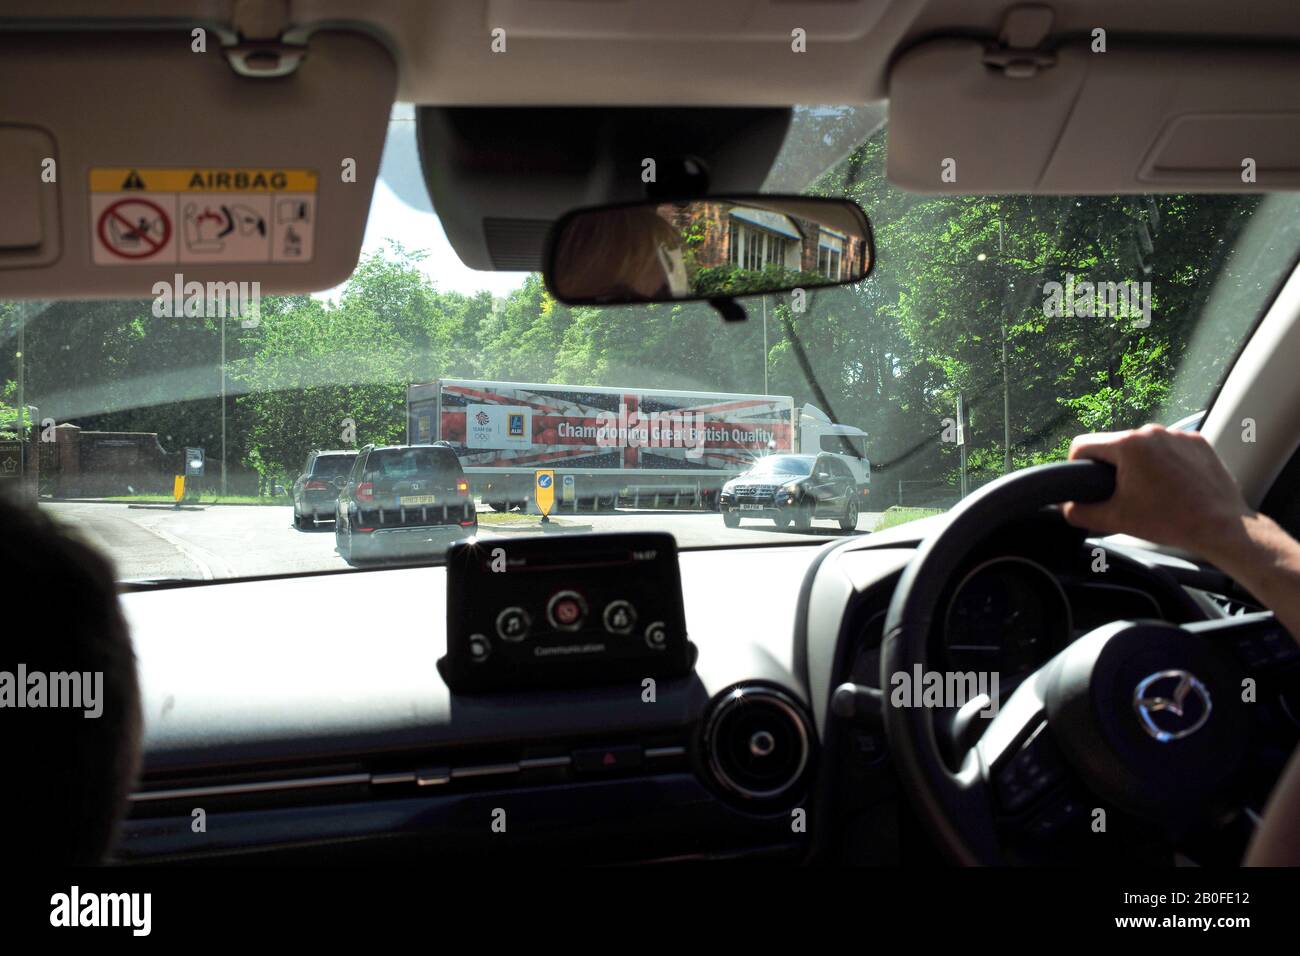 Una vista di un camion Aldi Supermarket con una bandiera Union Jack sul rimorchio che fa pubblicità alla qualità britannica vista dall'interno di un automobile. Foto Stock